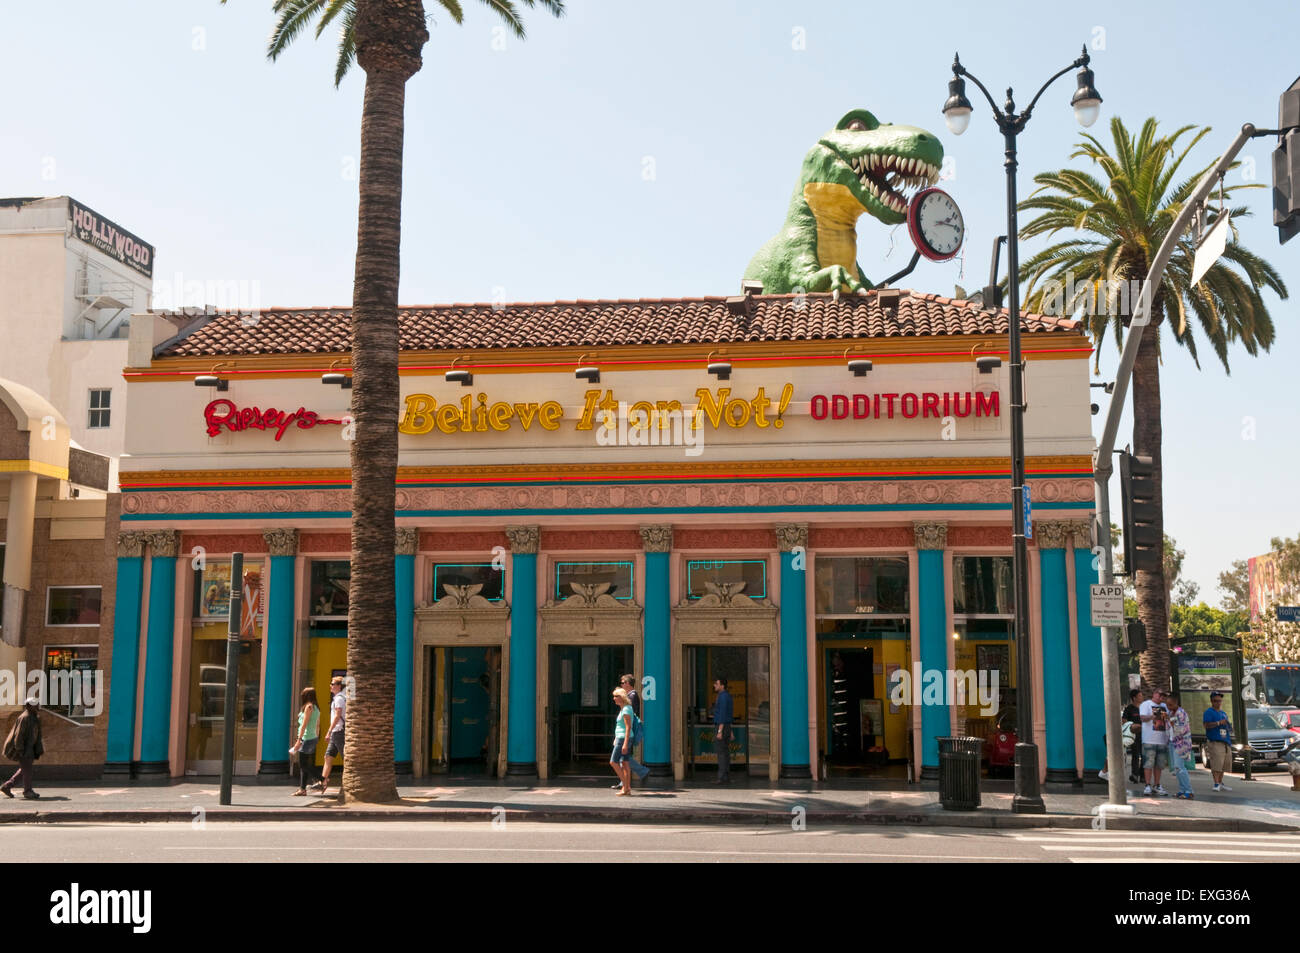 Credeteci o no di Ripley! Odditorium su Hollywood Boulevard, Los Angeles, California, Stati Uniti d'America Foto Stock